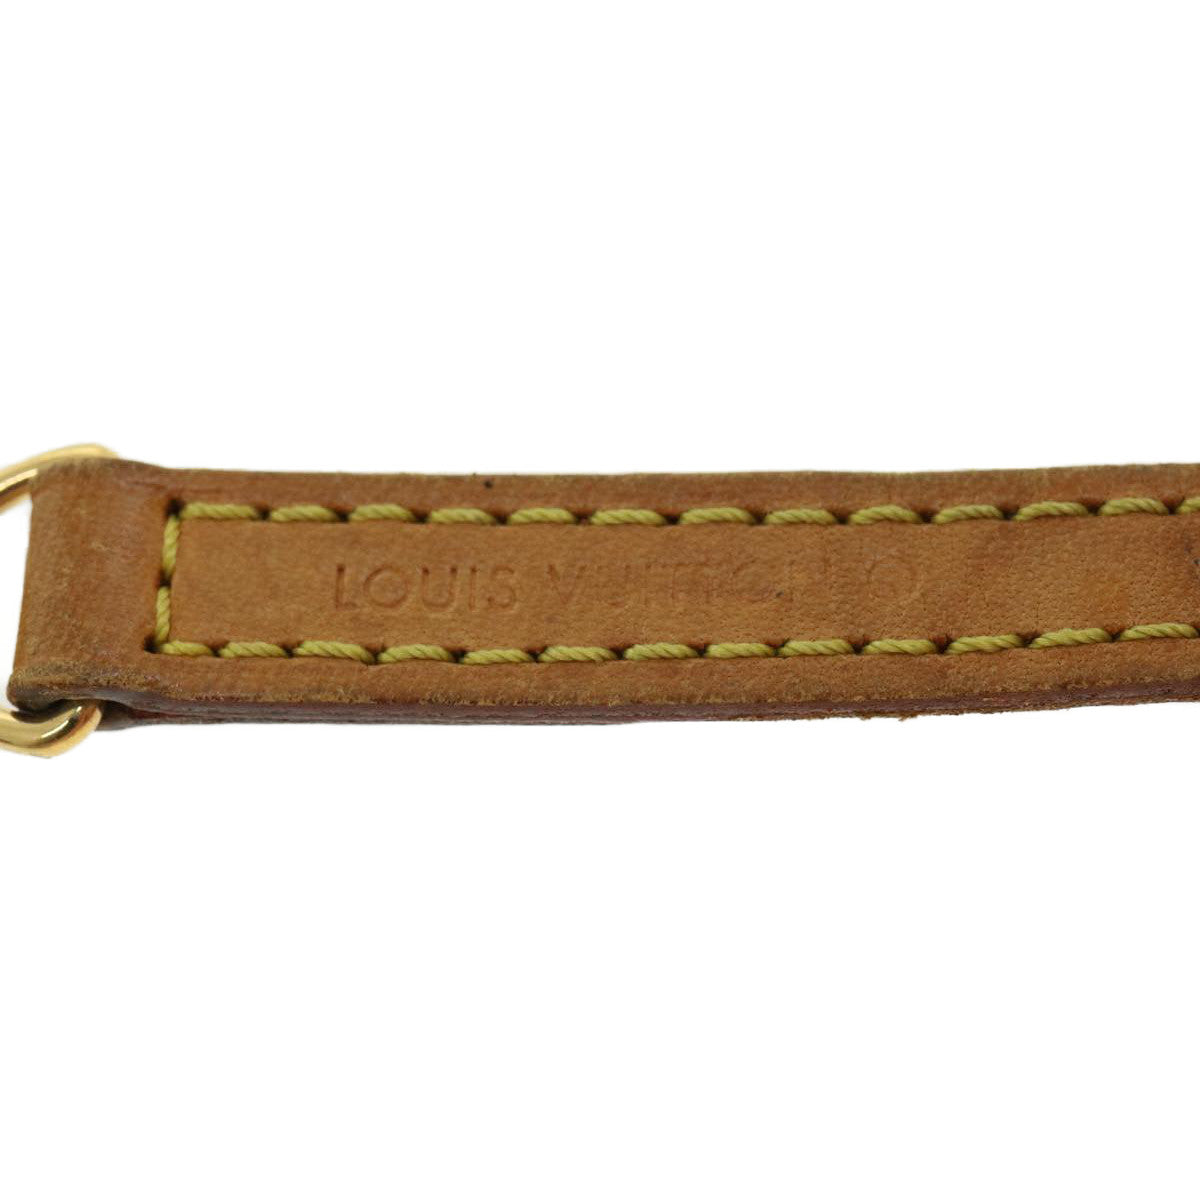 LOUIS VUITTON Shoulder Strap Leather 44.9"" Beige LV Auth 31292